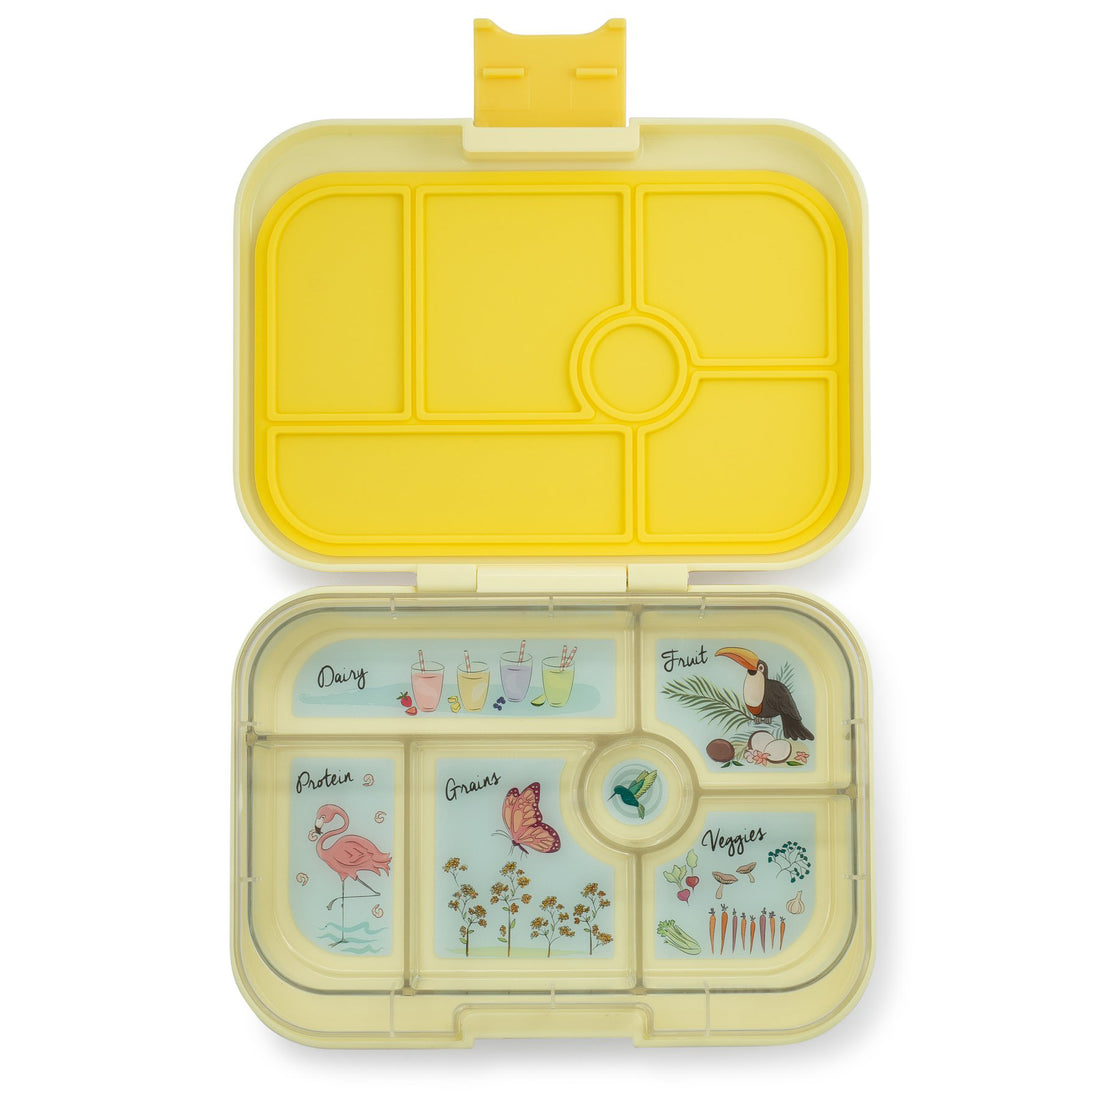 yumbox-original-sunburst-yellow-6-compartment-lunch-box- (1)